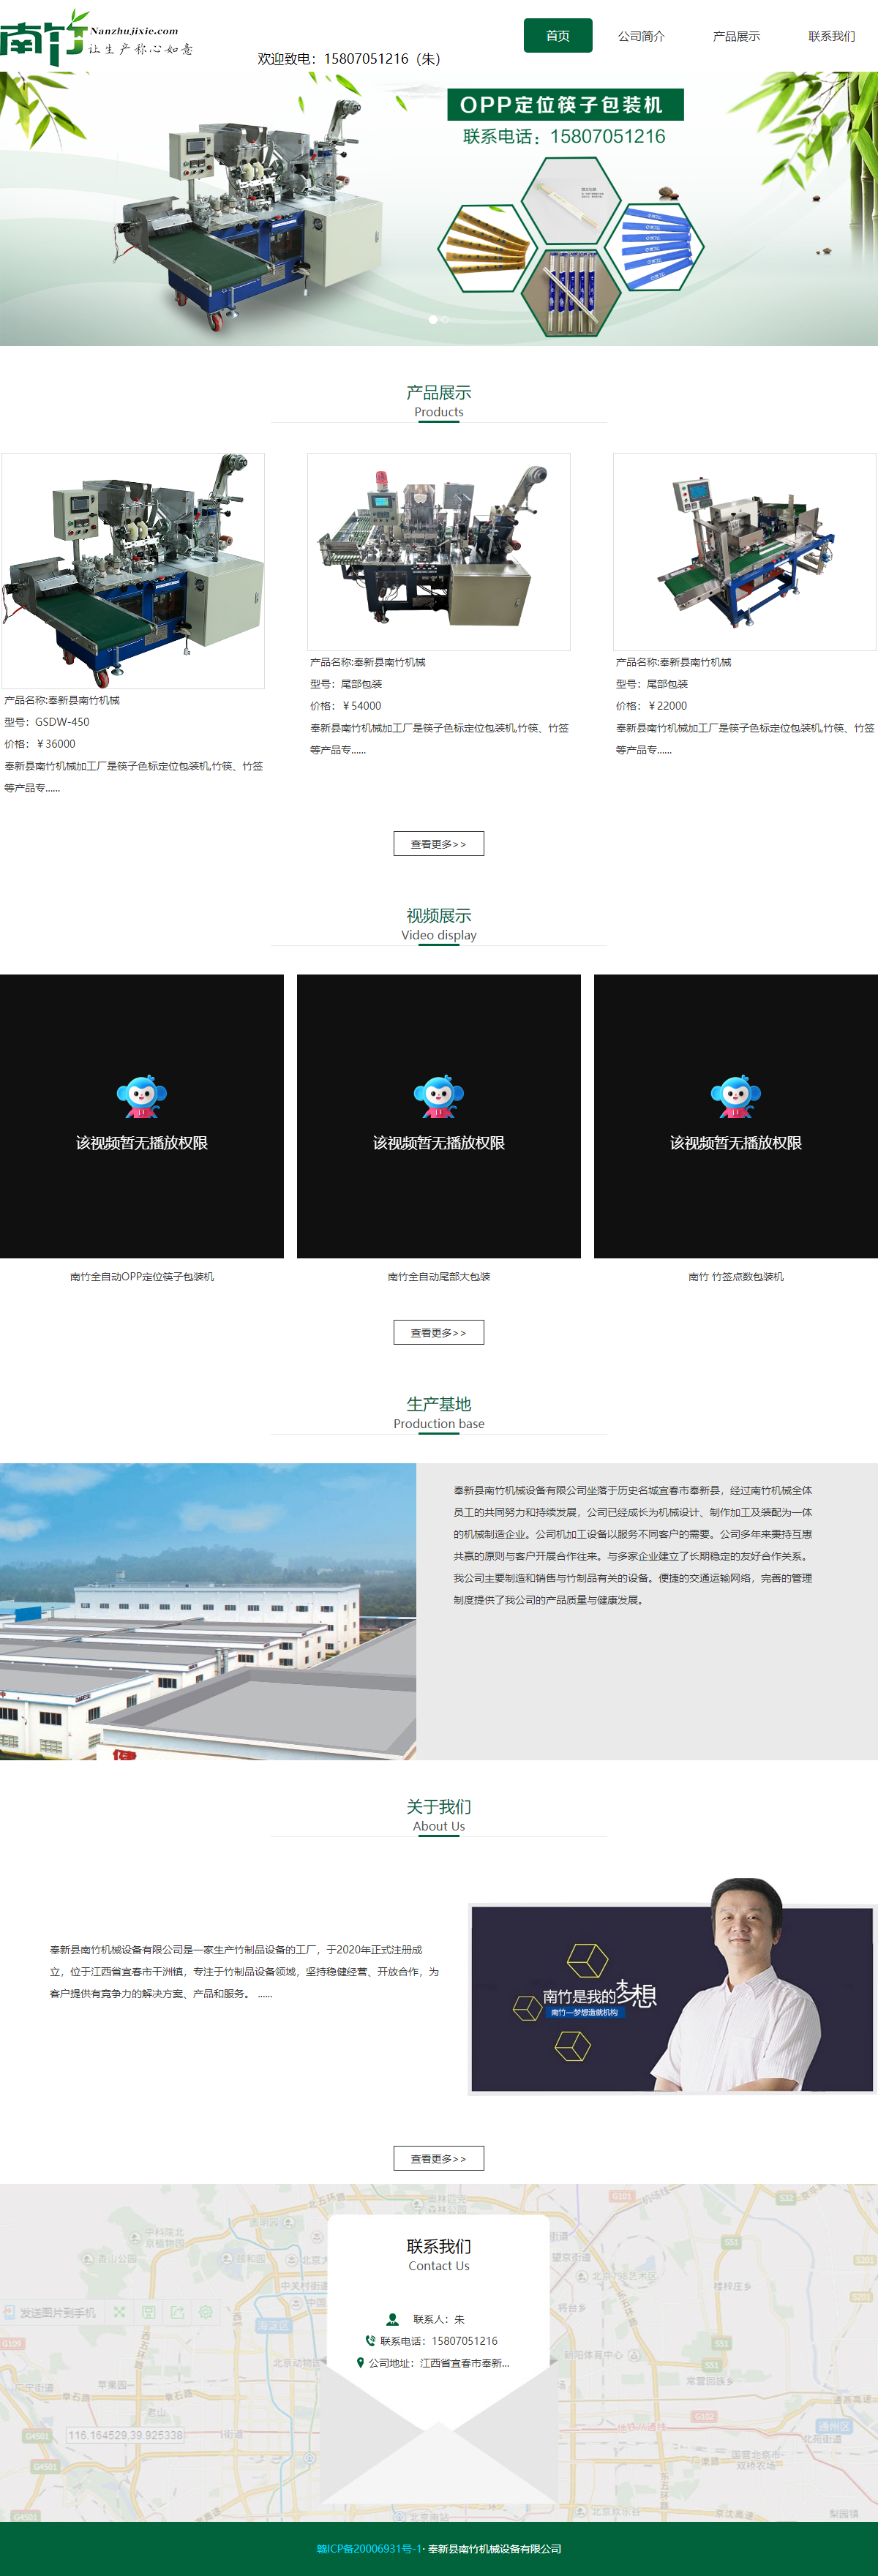 奉新县南竹机械设备有限公司网站案例